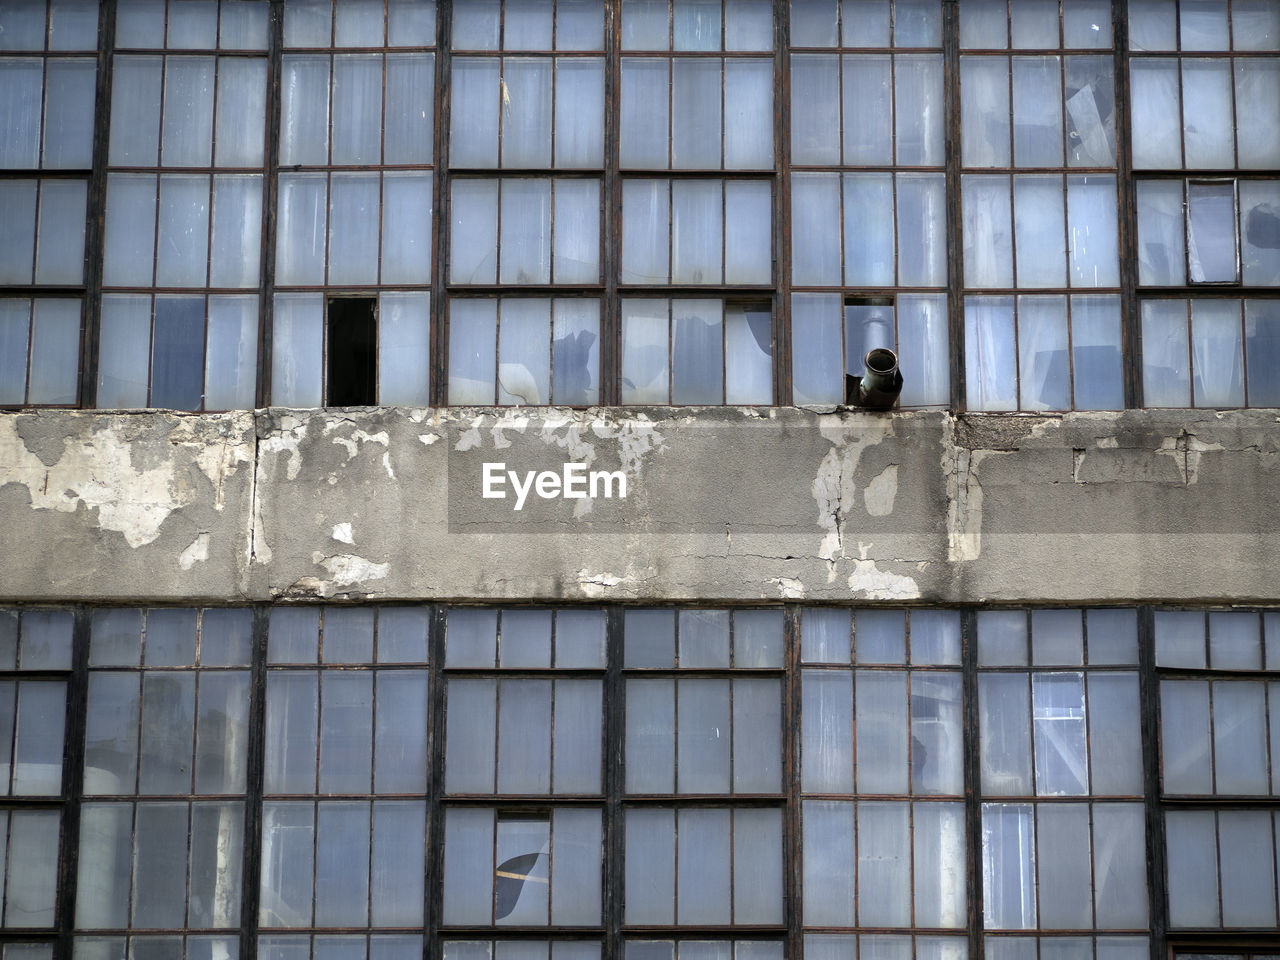 Broken windows in an abandoned industrial building